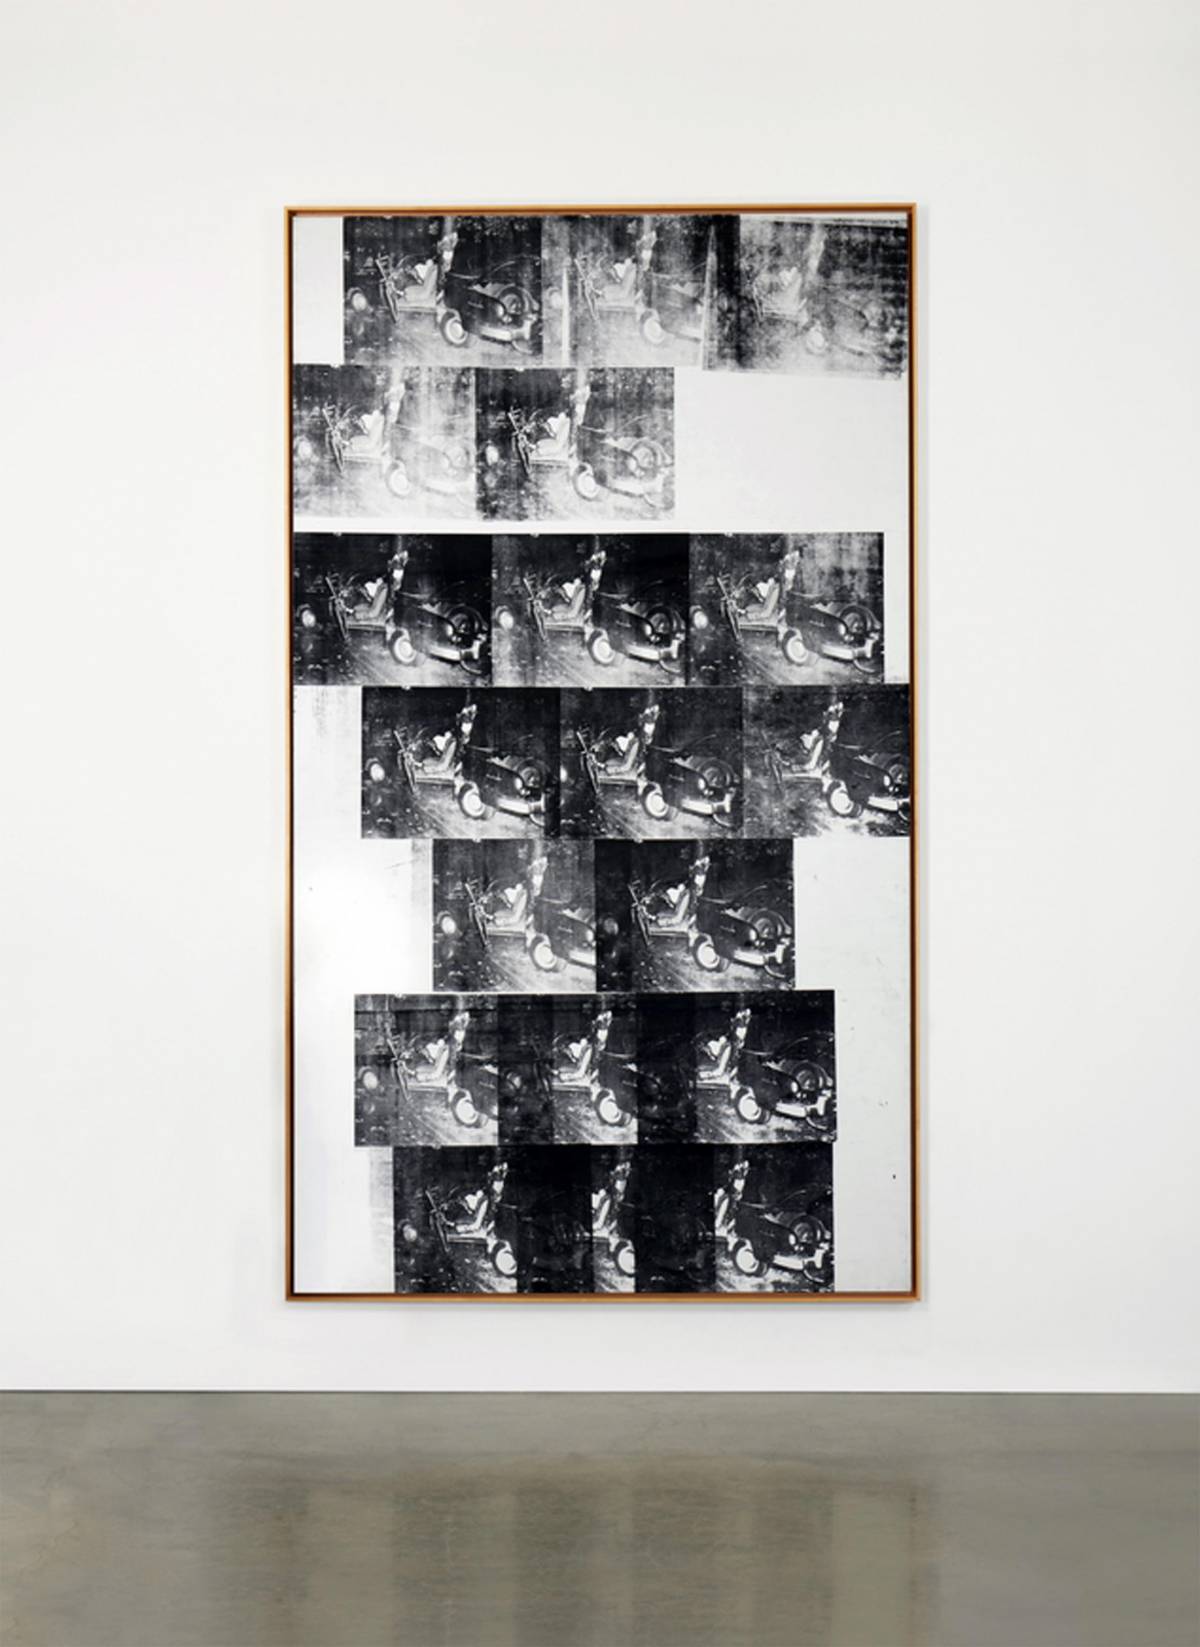 Il fascino dell'apocalisse: "White Disaster" di Warhol battuto per 85 milioni di dollari